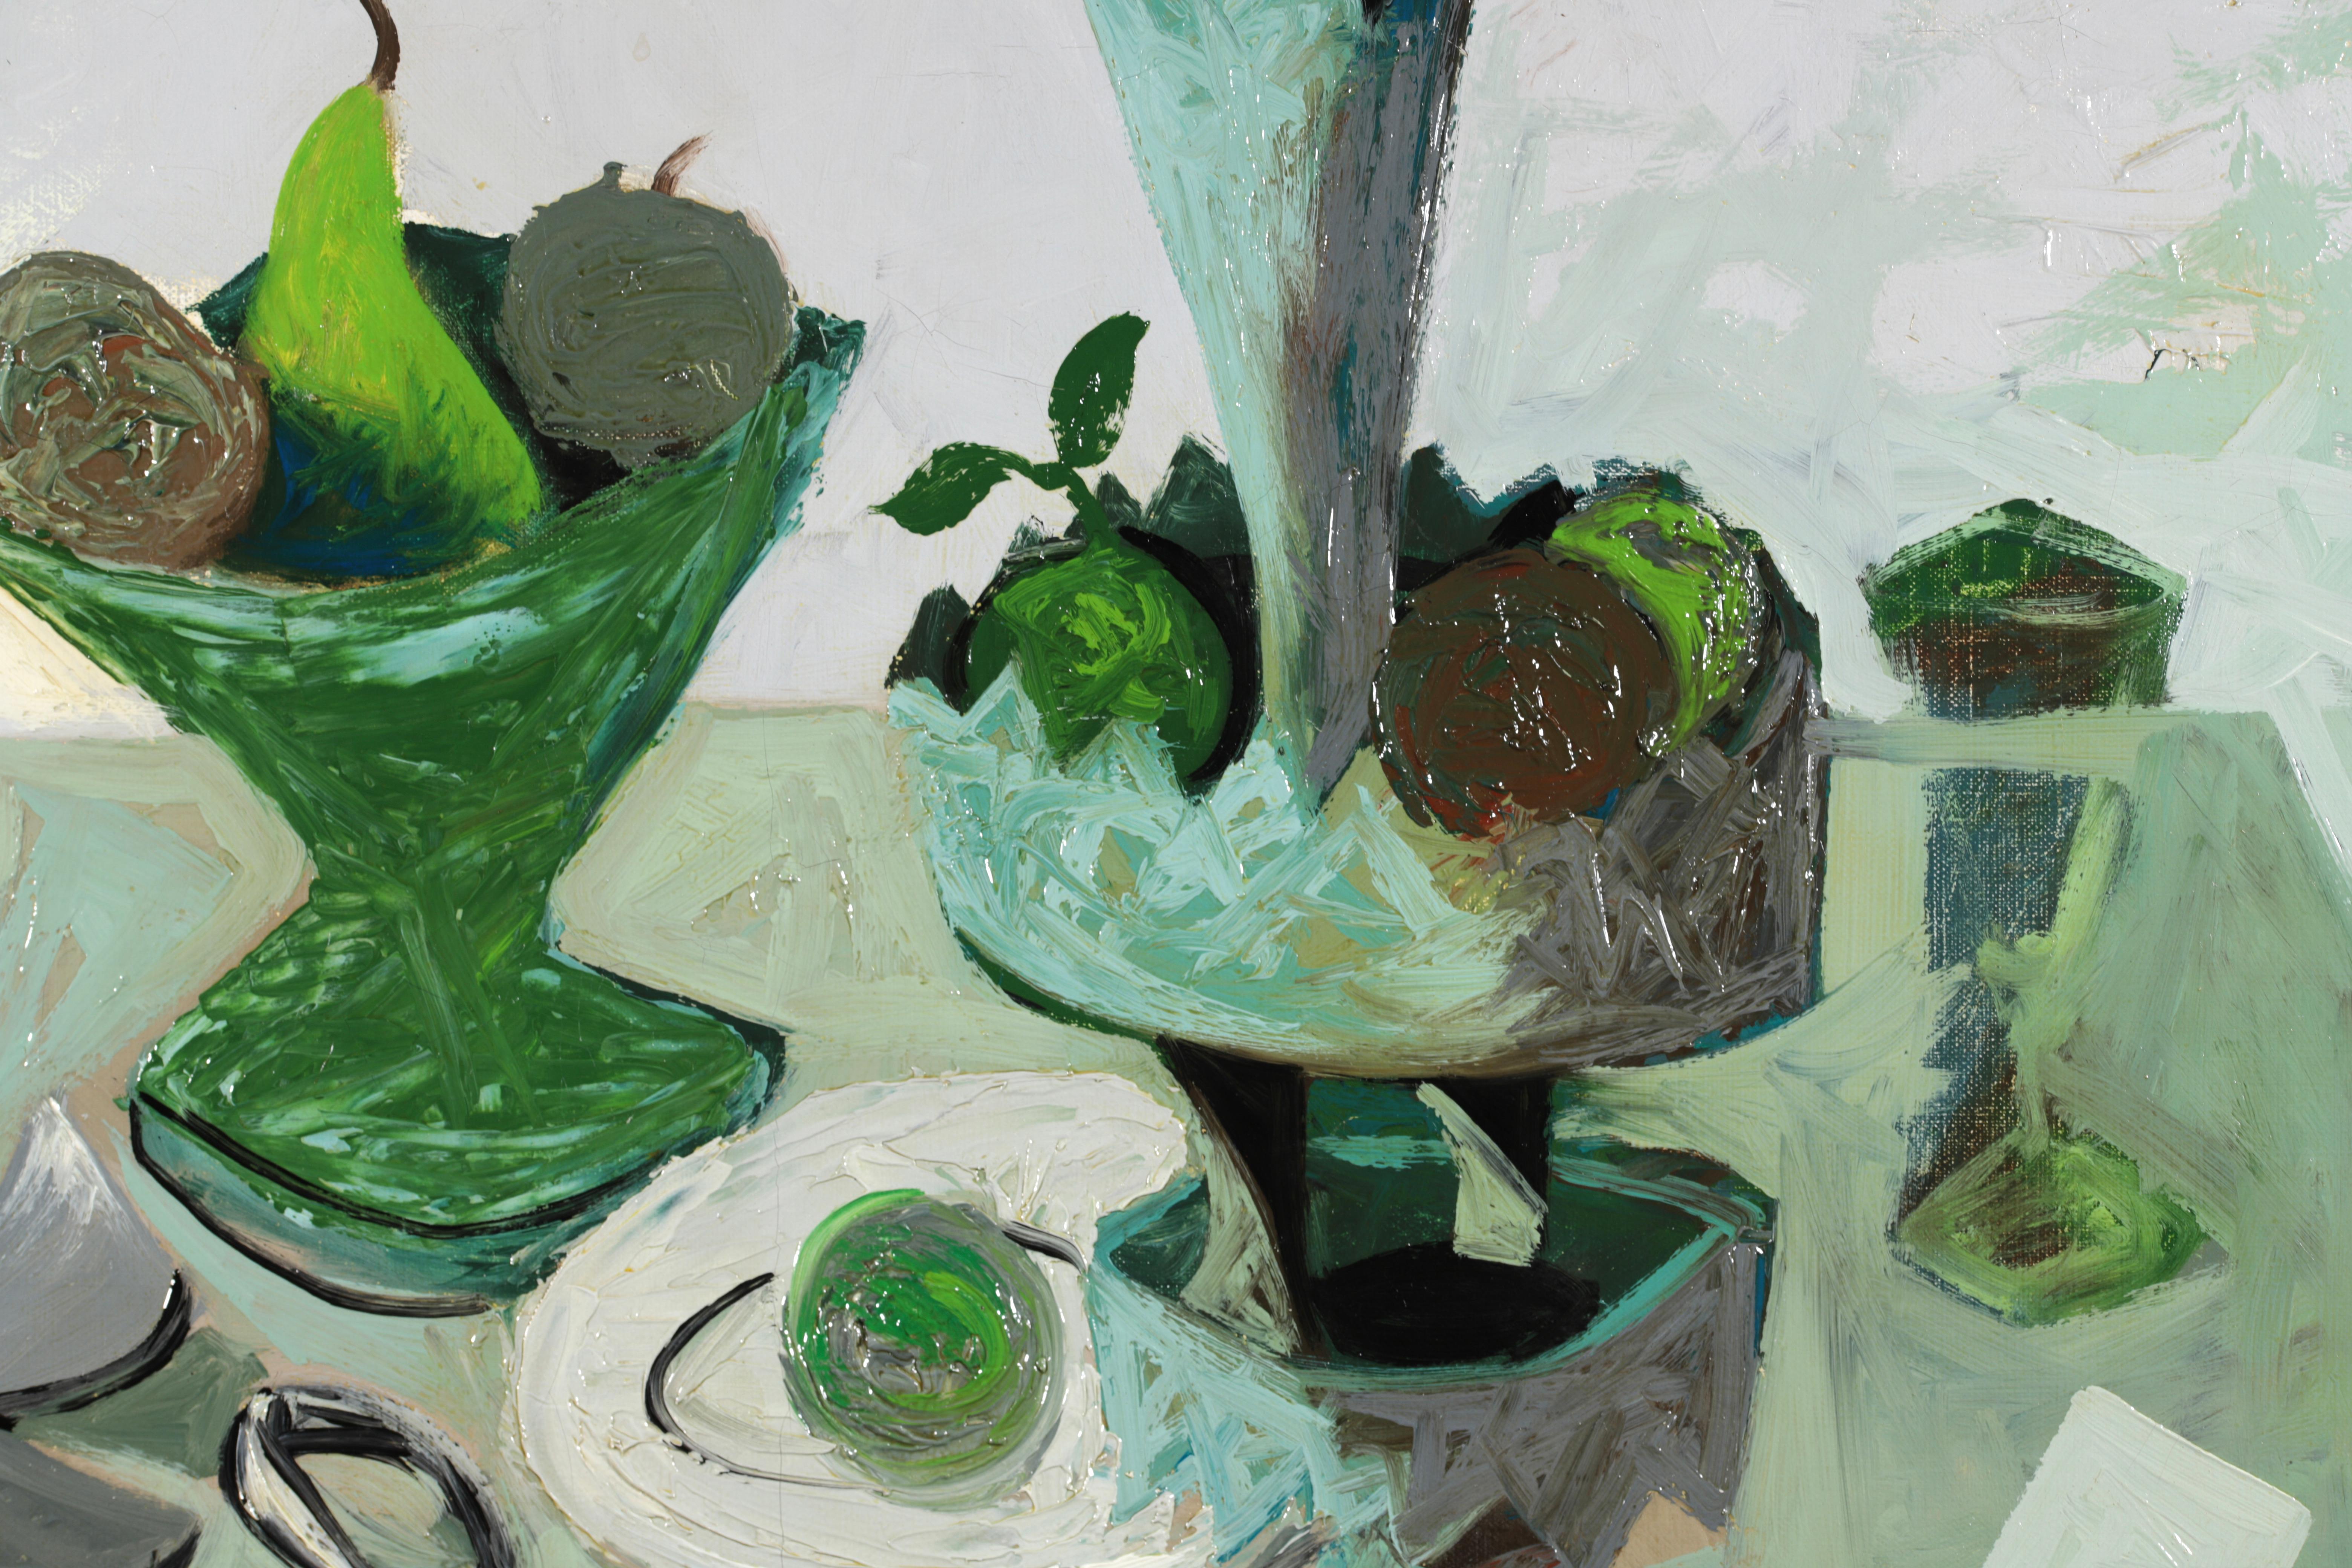 Huile sur toile post-cubiste signée, datant de 1950, du peintre français Claude Venard. L'œuvre, peinte principalement dans des tons verts et gris, représente divers objets posés sur une table - un vase contenant un pinceau, des coupes de fruits